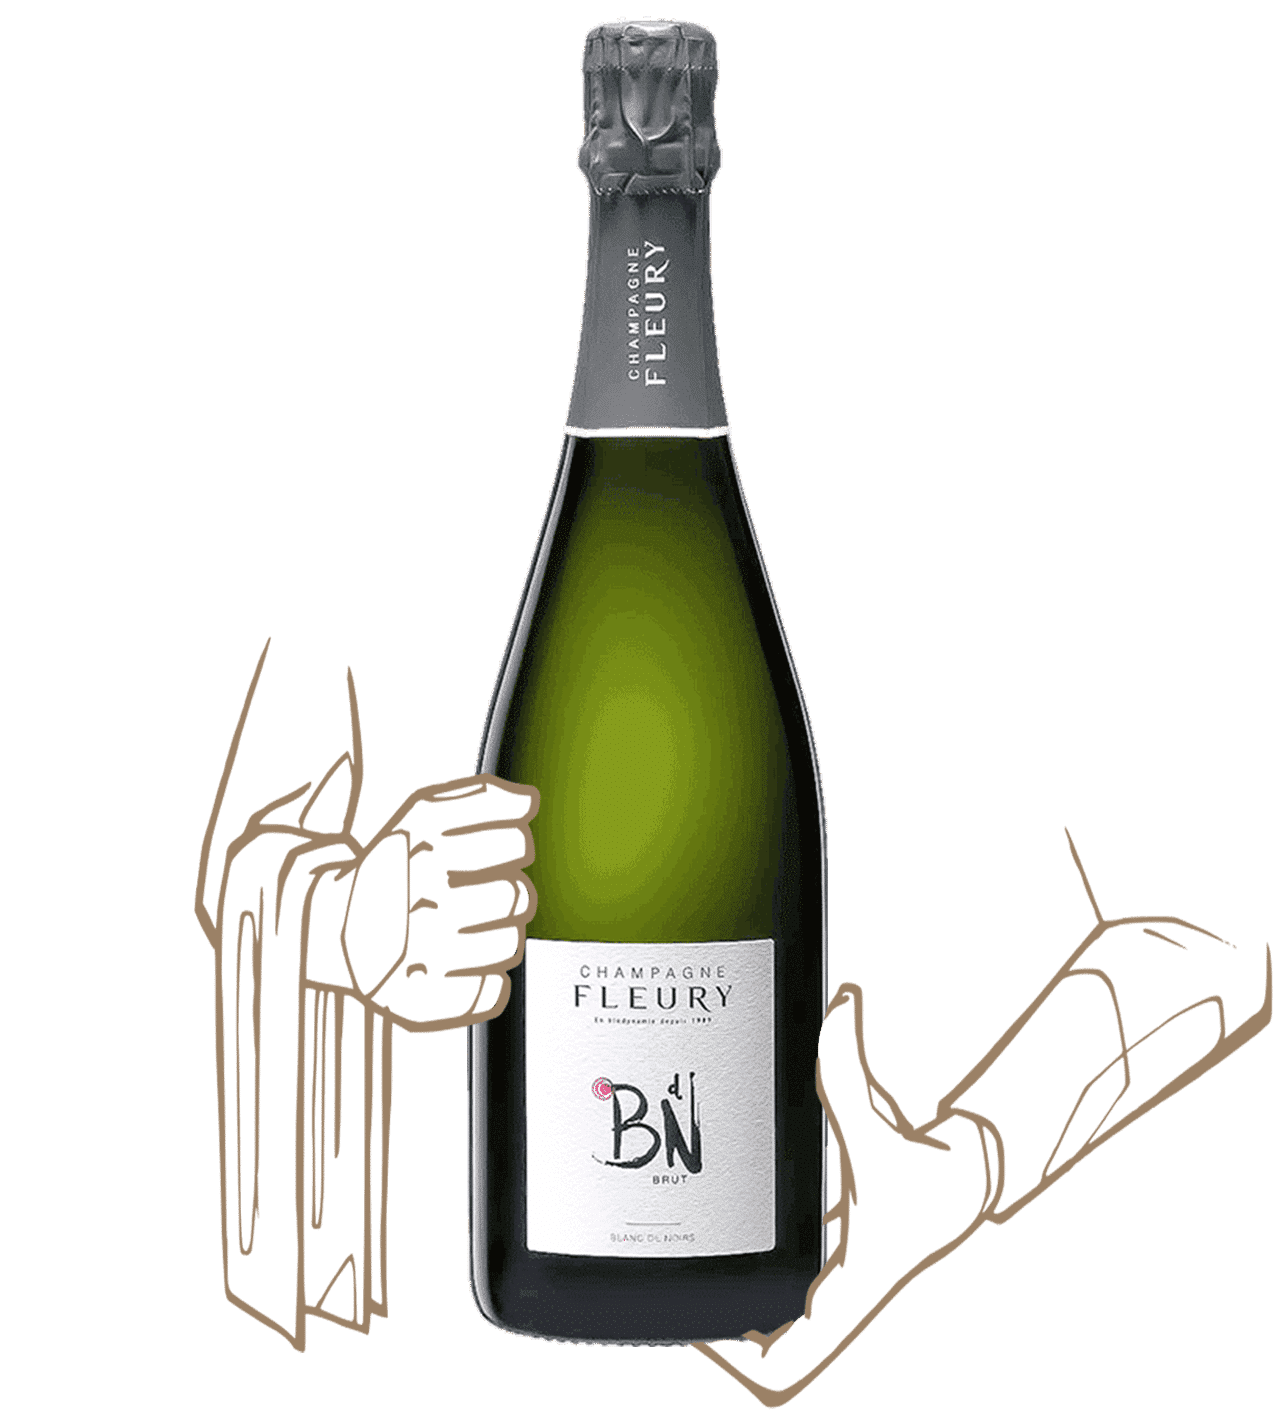 BDN est un champagne de maison champagne fleury